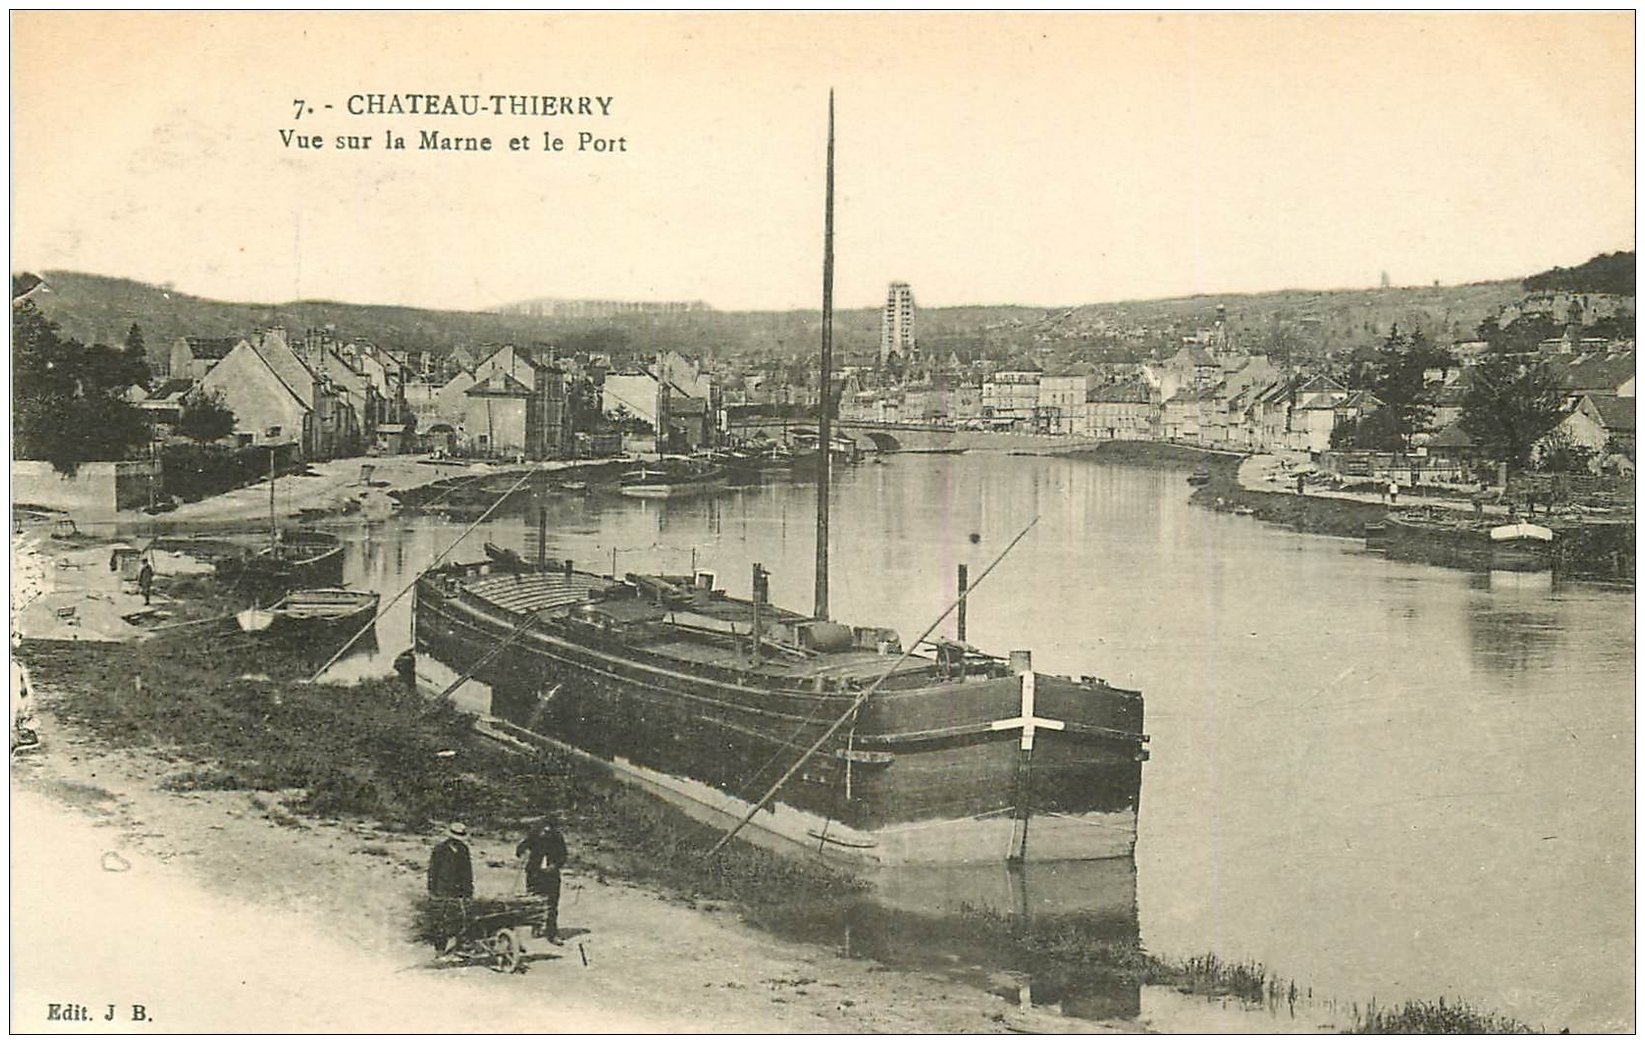 carte postale ancienne 02 CHATEAU-THIERRY. Port et Péniche sur la Marne